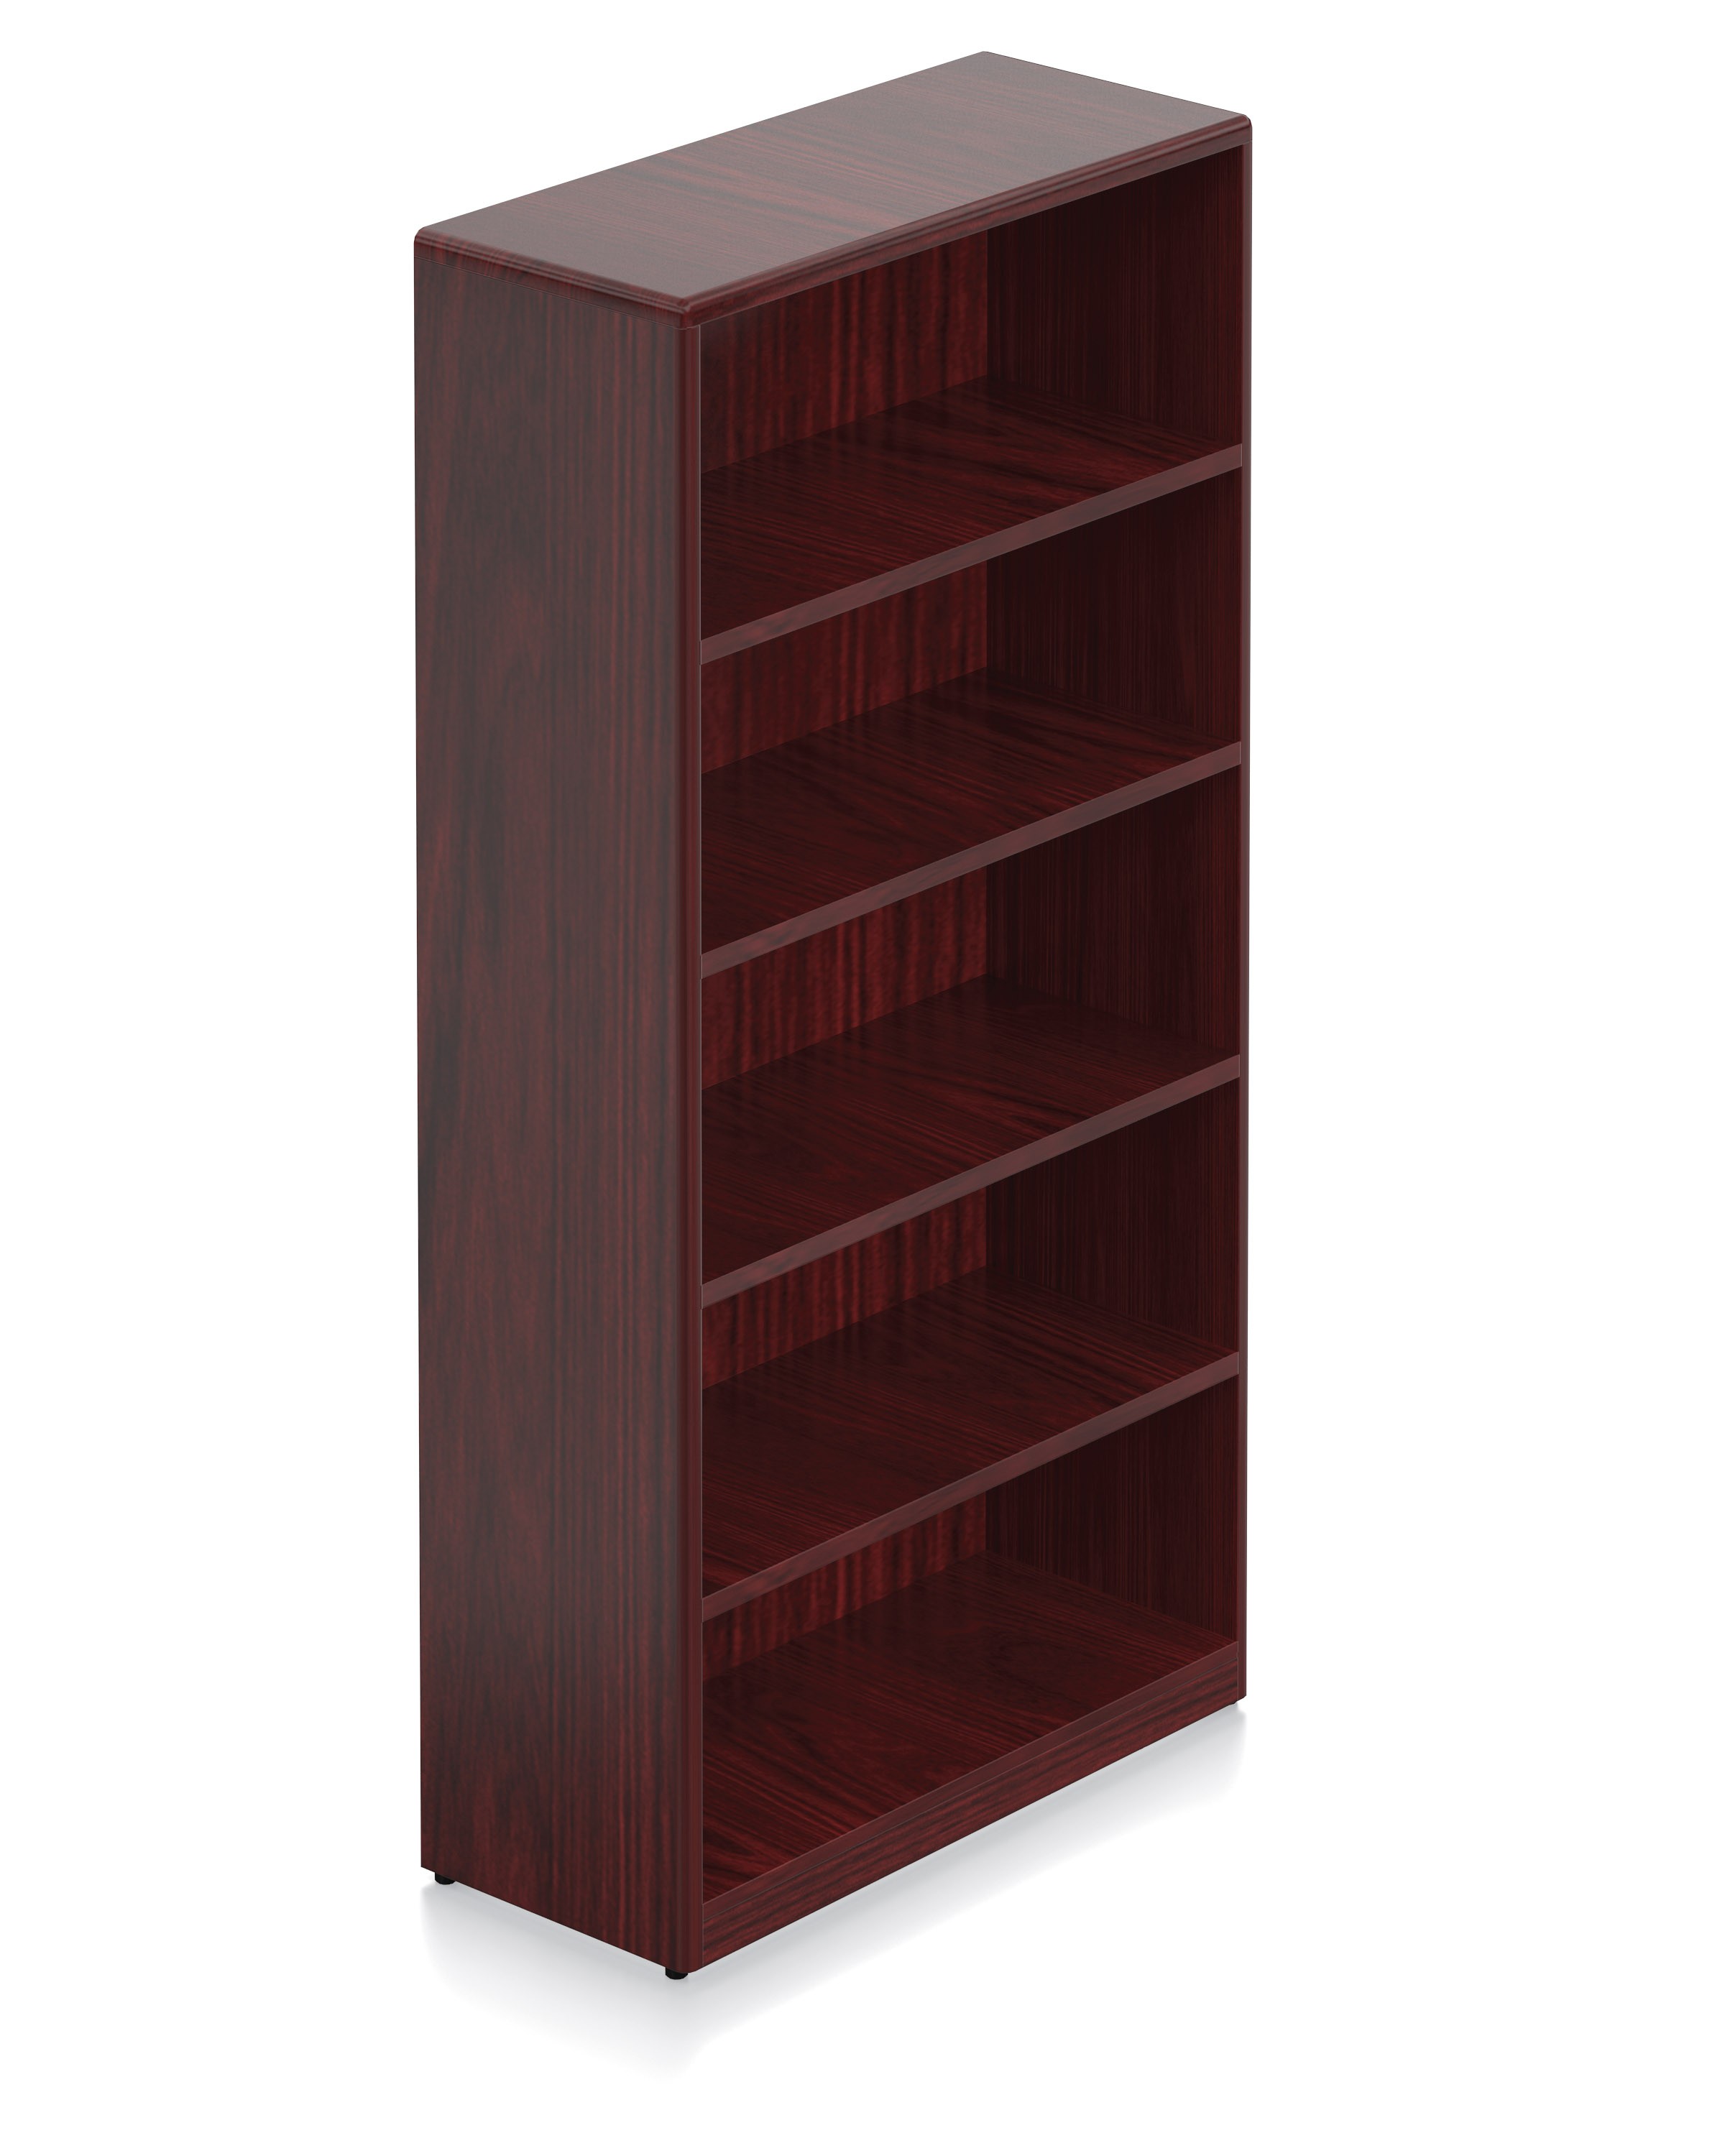 Margate Wood Veneer 70" Bookcase